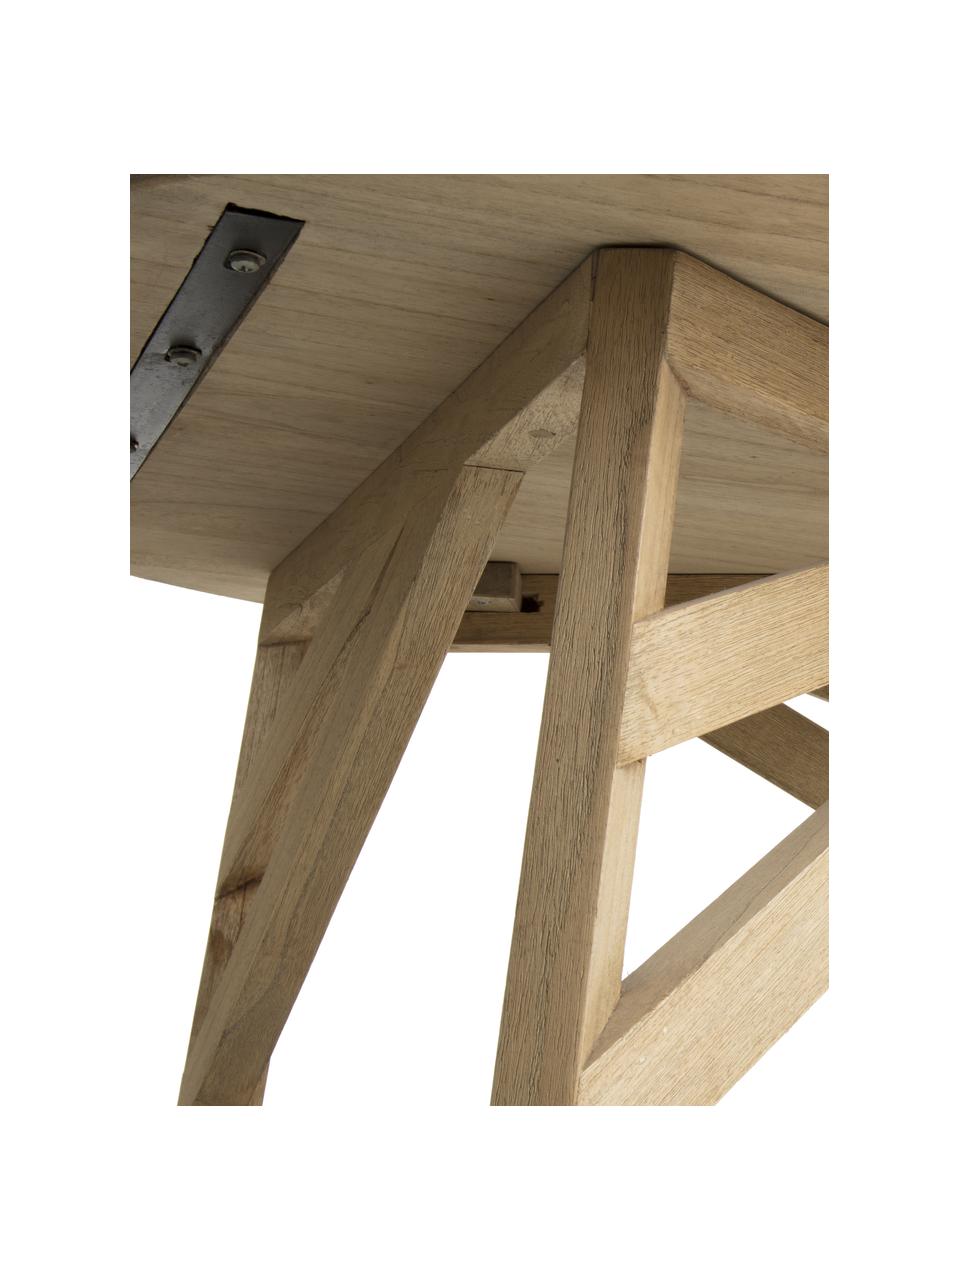 Table basse ronde en bois Tenda, Margousier, Beige, Ø 60 cm